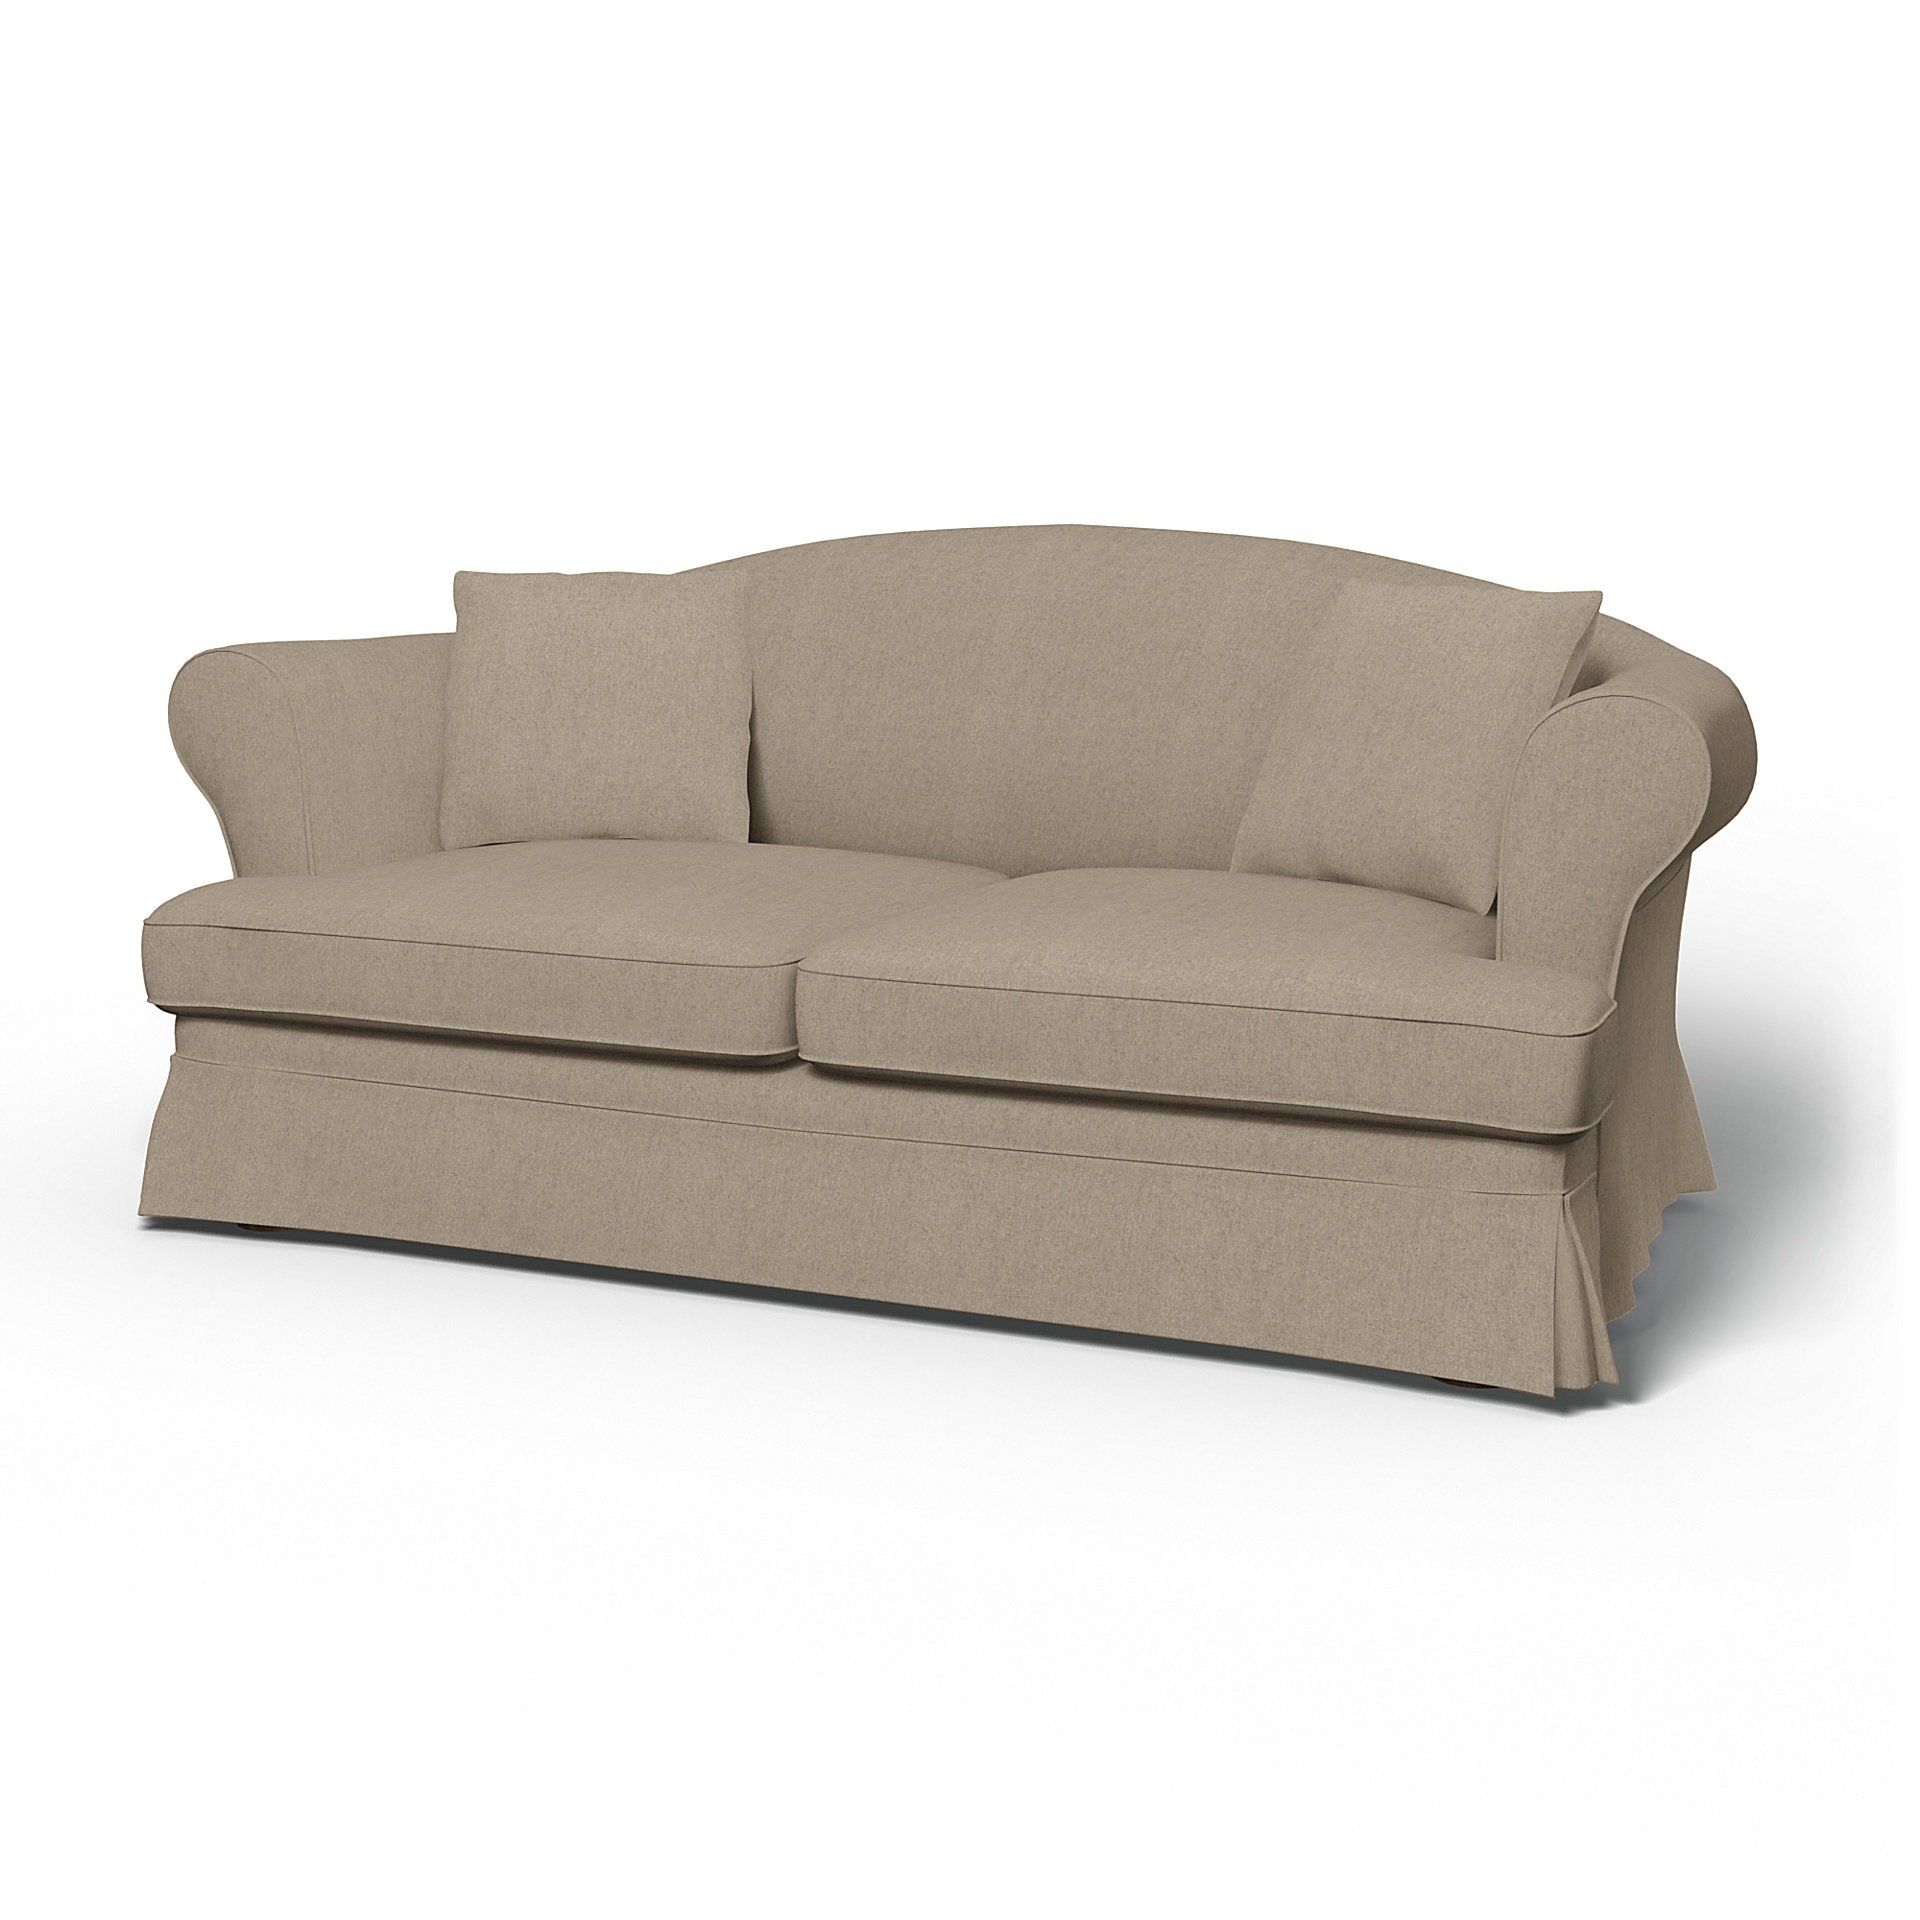 IKEA - Sundborn Sofa Bed Cover, Birch, Wool - Bemz